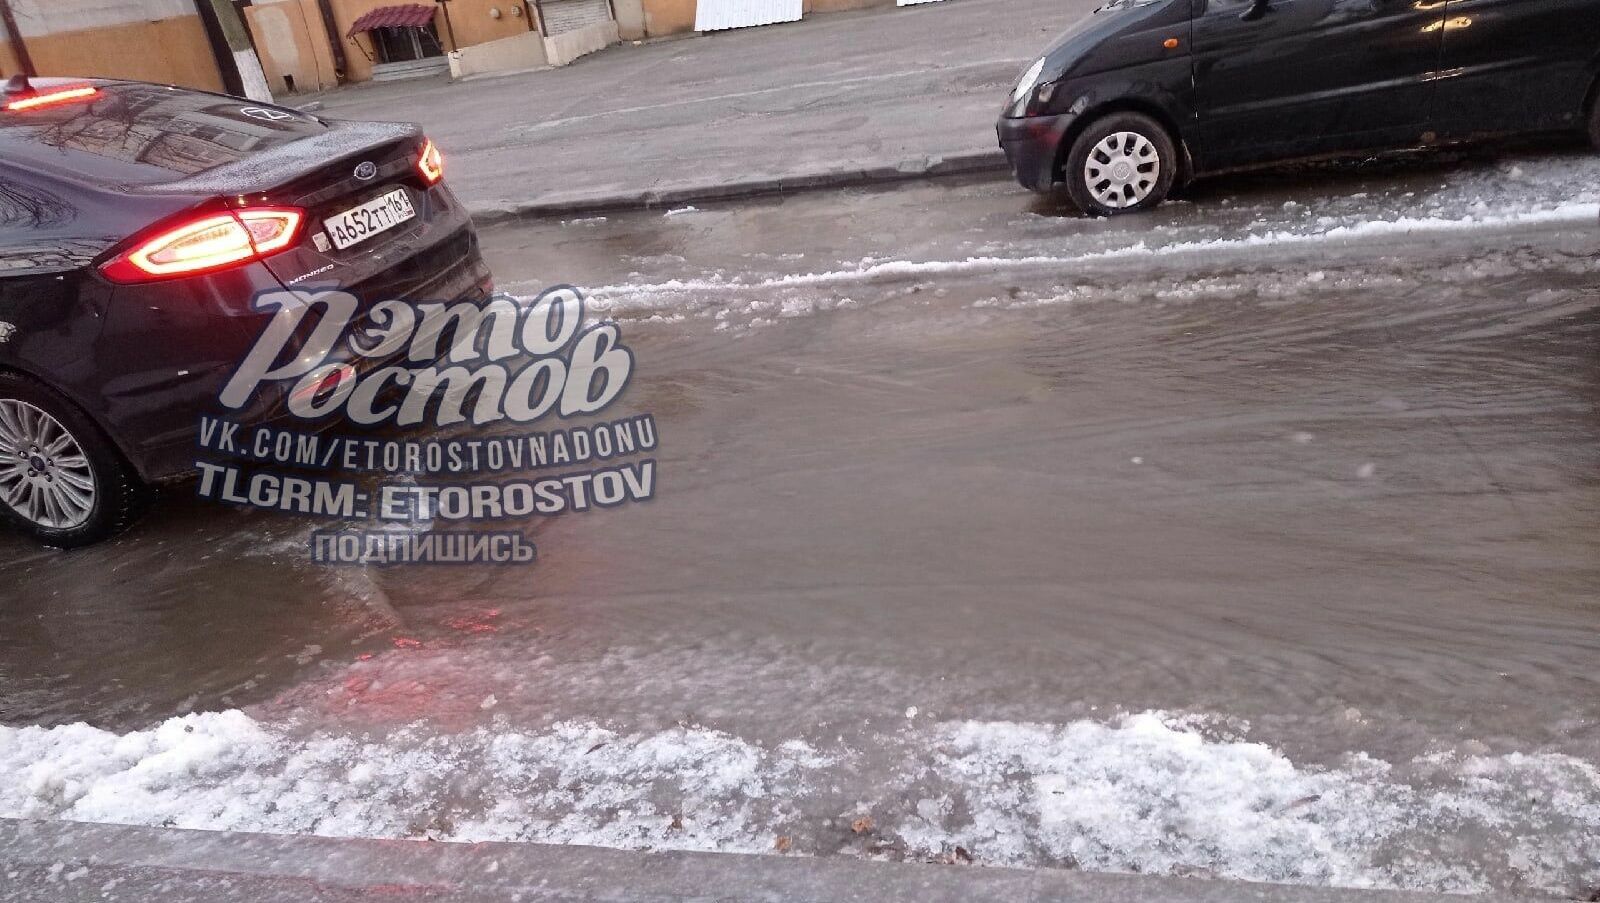 Прокуратуру просят назначить проверку из-за покрывшихся льдом дорог в Ростове-на-Дону